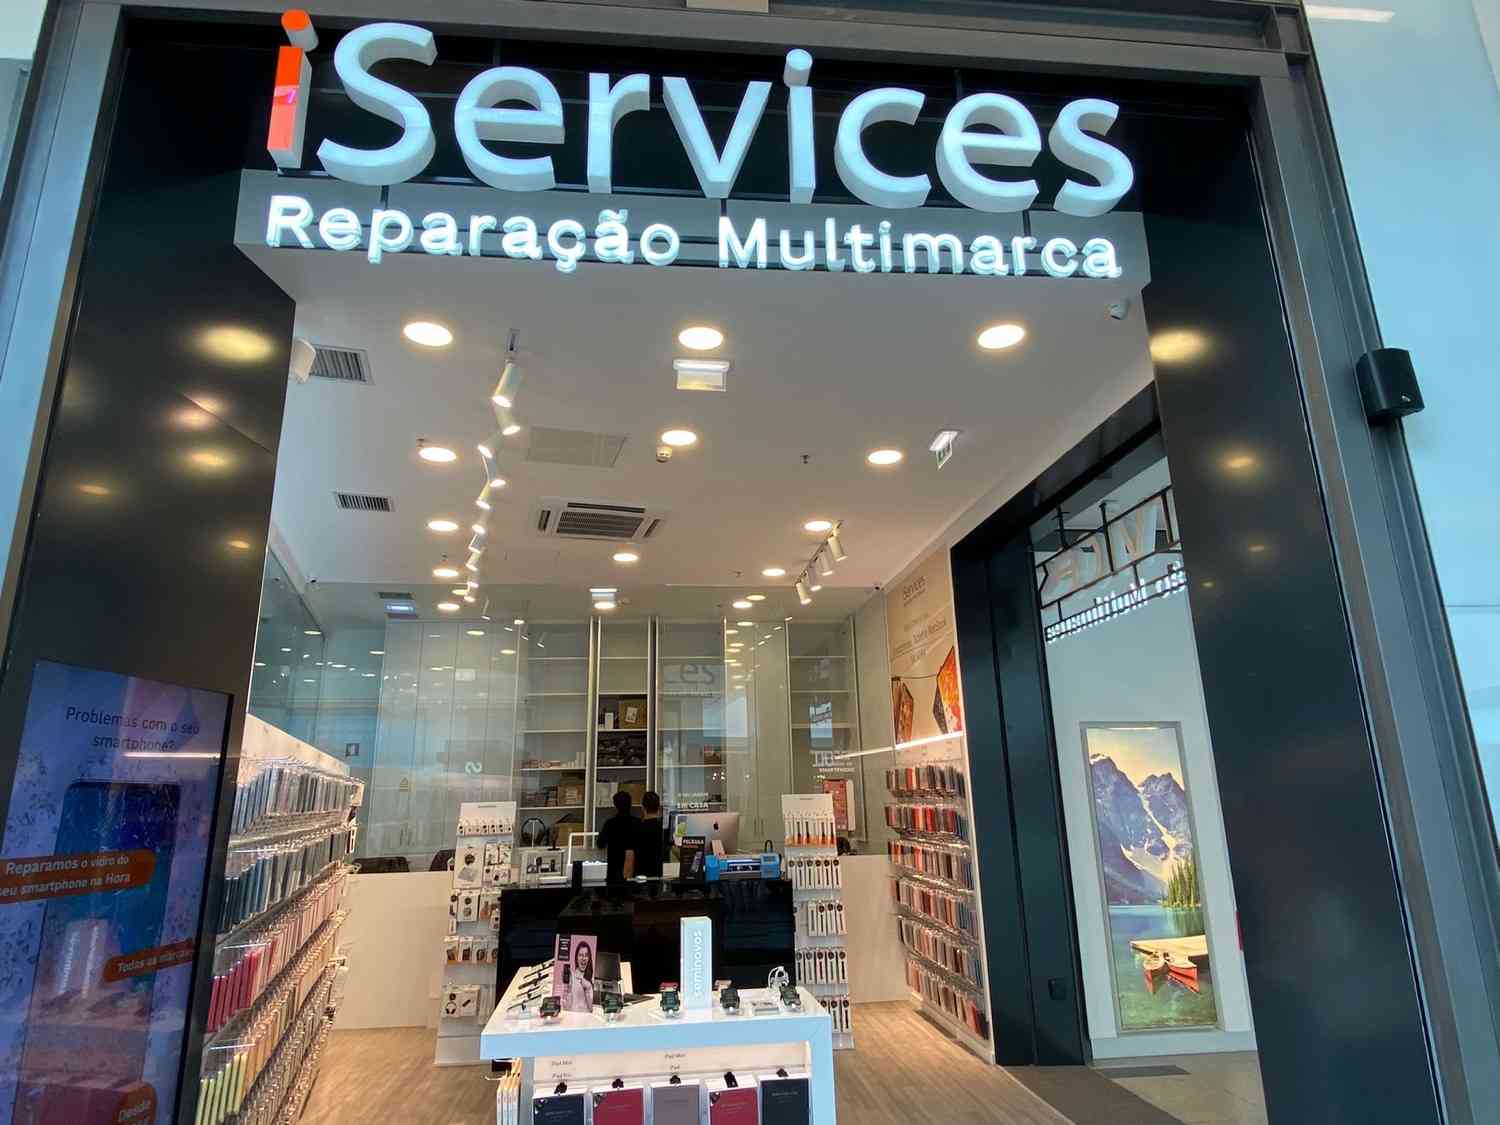 ¡Llegamos a Nuestro Centro Comercial! Abrimos iServices Vila Real  blog post